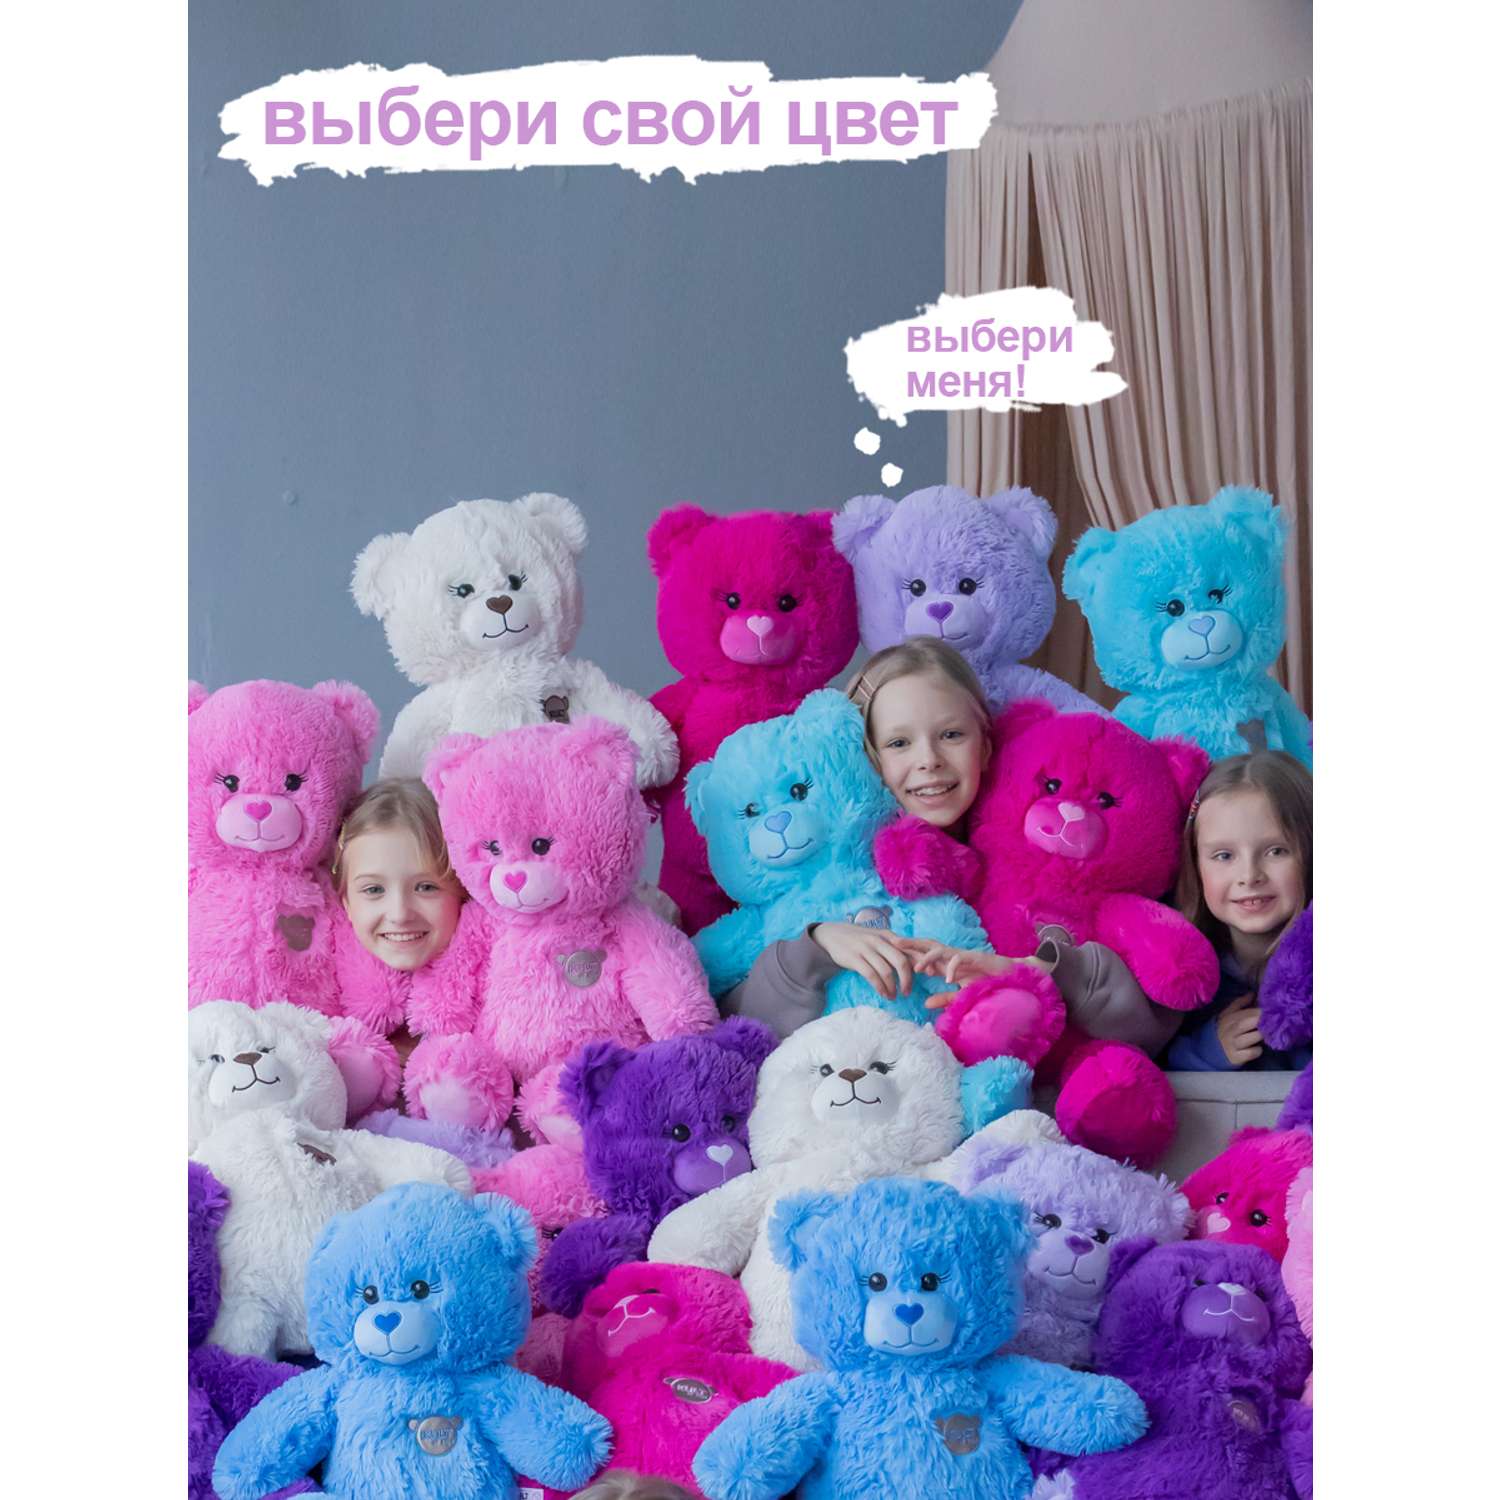 Мягкая игрушка KULT of toys Плюшевый медведь Color 65 см цвет сиреневый - фото 9